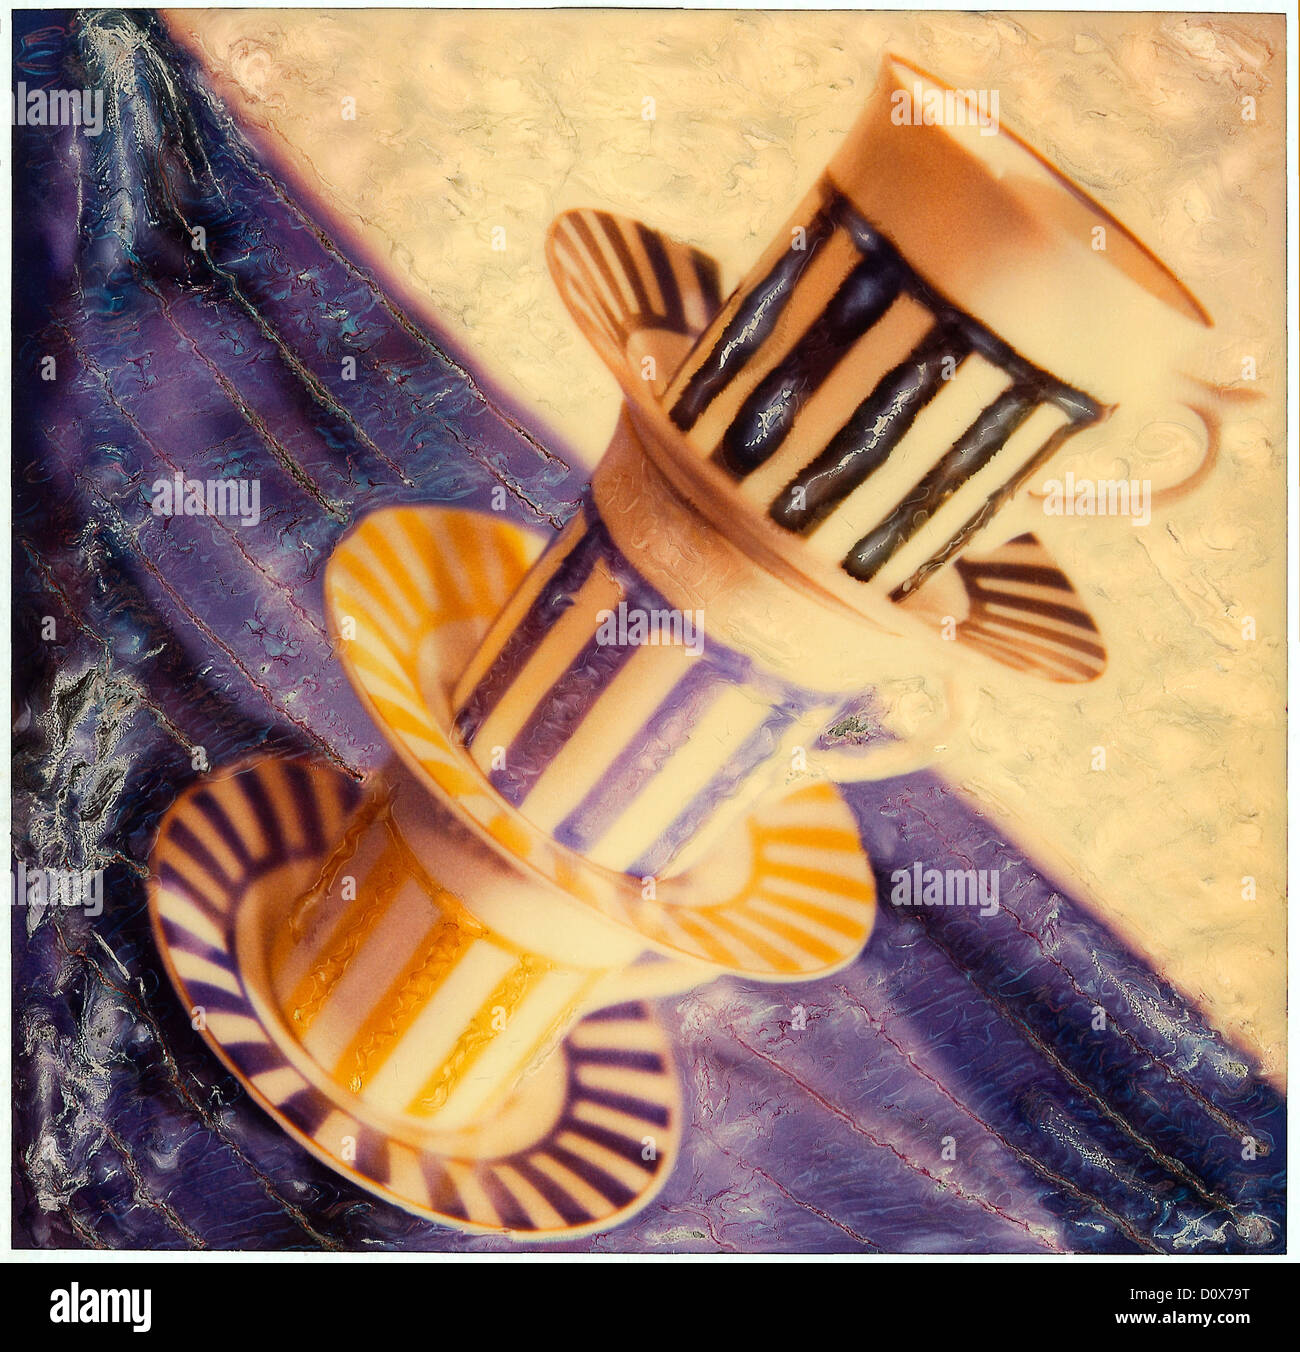 Expresso 3 tasses et soucoupes empilées, polaroid SX-70 manipulation, ©mak Banque D'Images